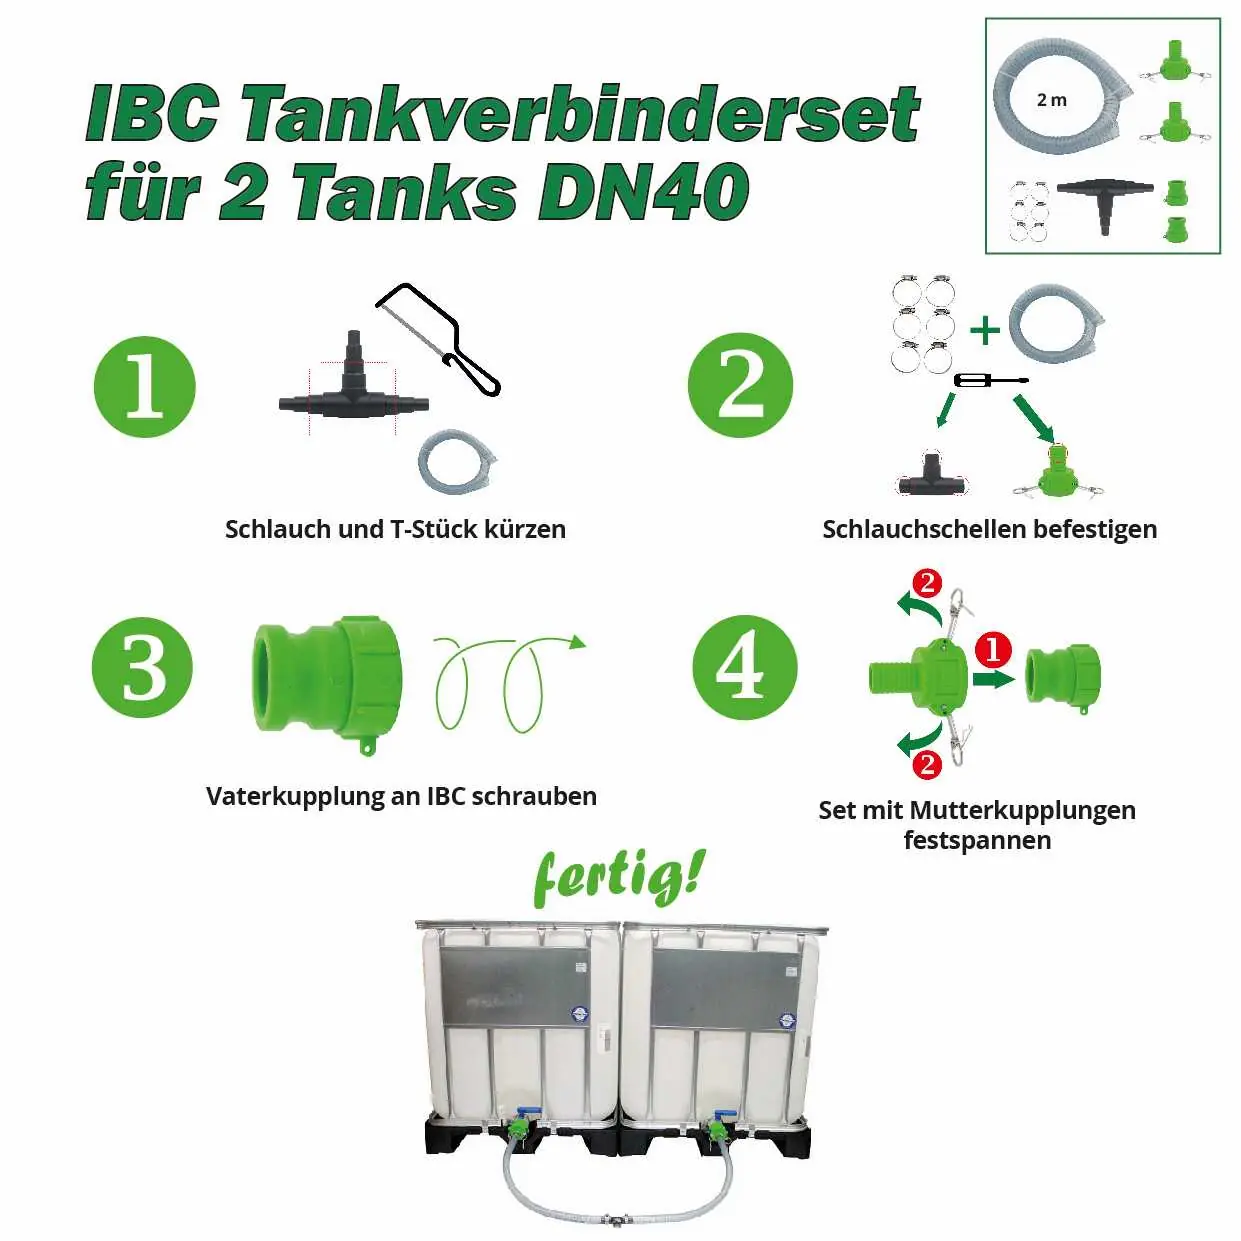 Anleitung IBC Tankverbinderset 2 Tanks DN40 erweiterbar